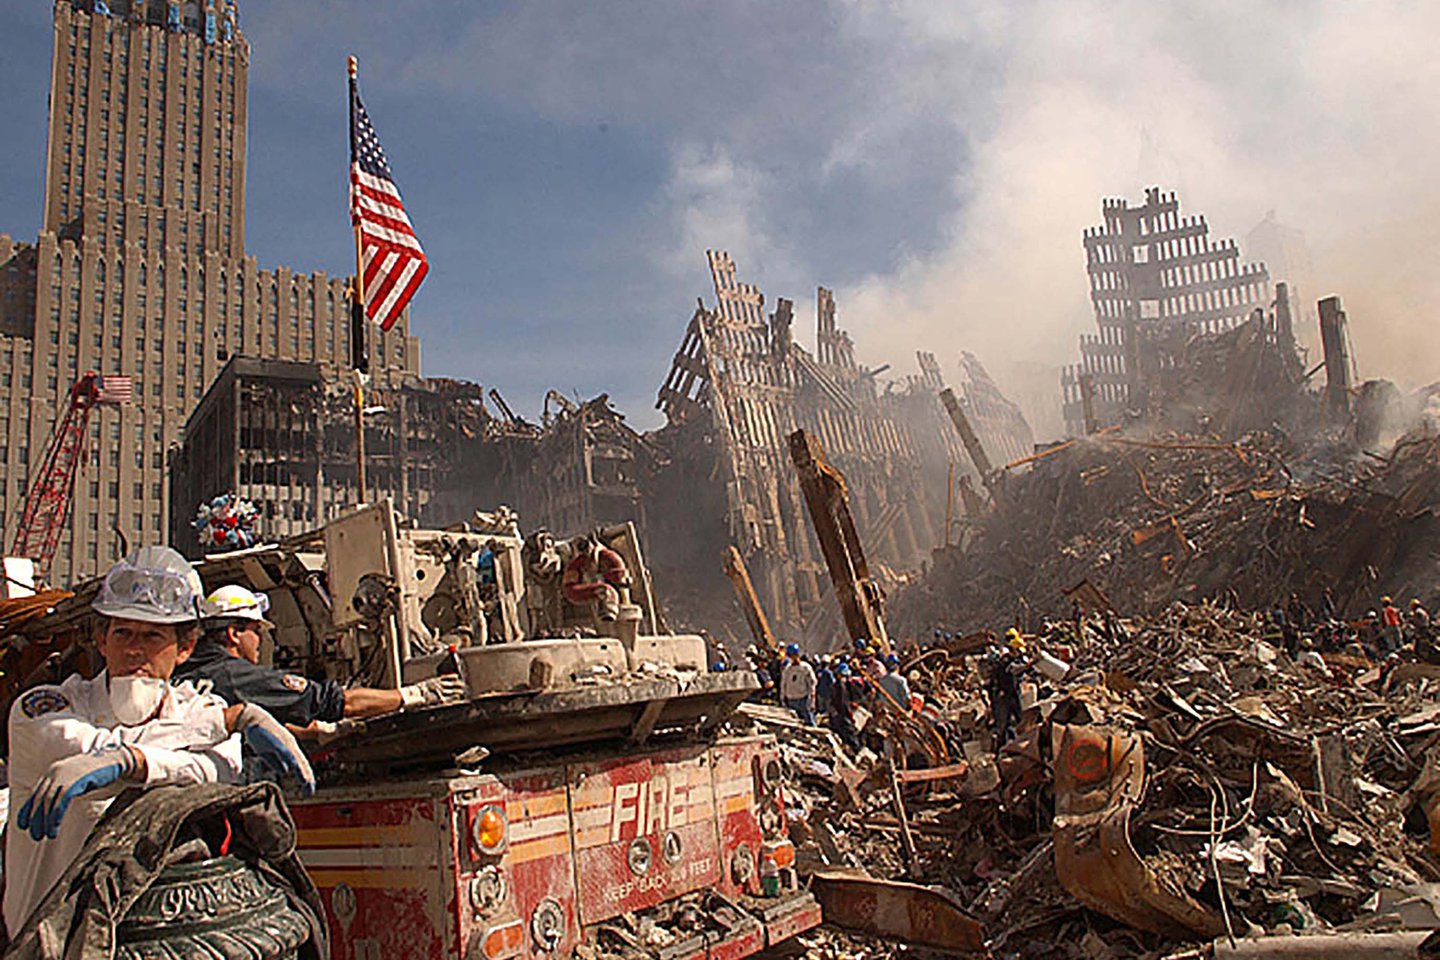 El servicio secreto de Estados Unidos publicó fotos inéditas del atentado terrorista del #11Sep